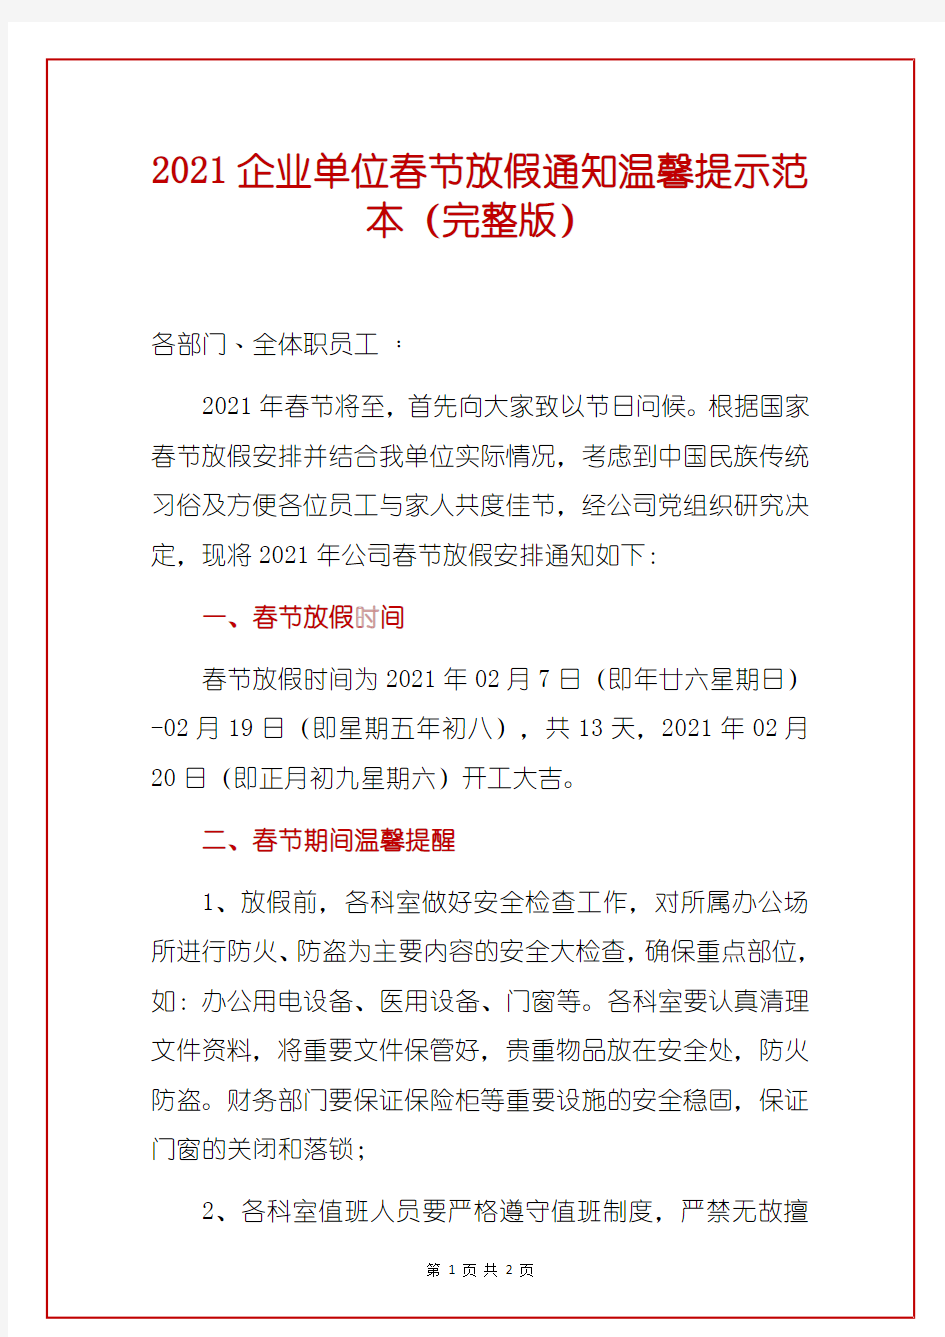 2021企业单位春节放假通知温馨提示范本(完整版)